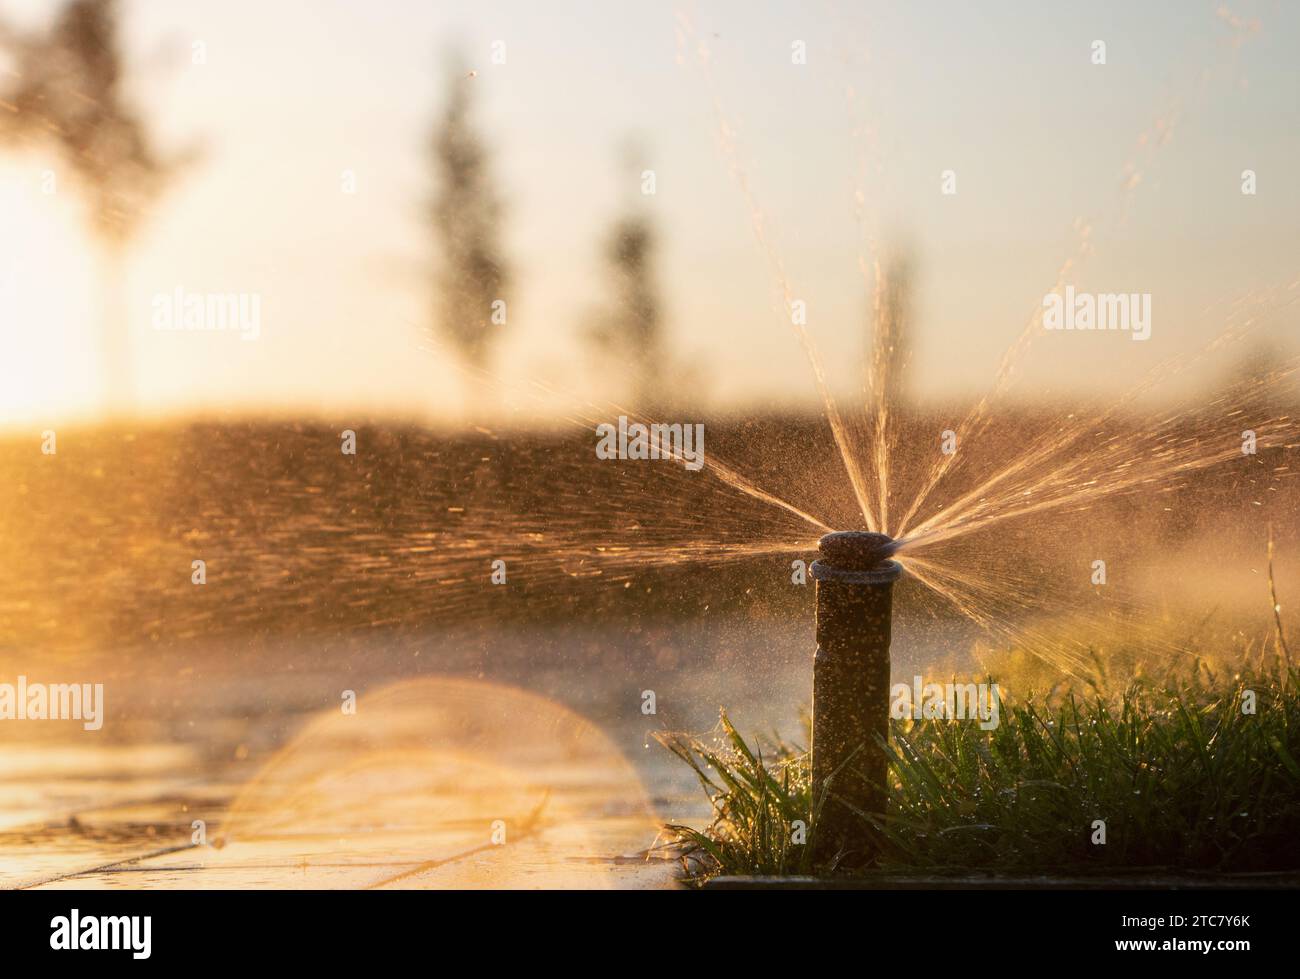 Sistema di irrigazione automatico che spruzza acqua sui prati per nutrire l'erba durante il tramonto, con luce solare brillante. Foto Stock